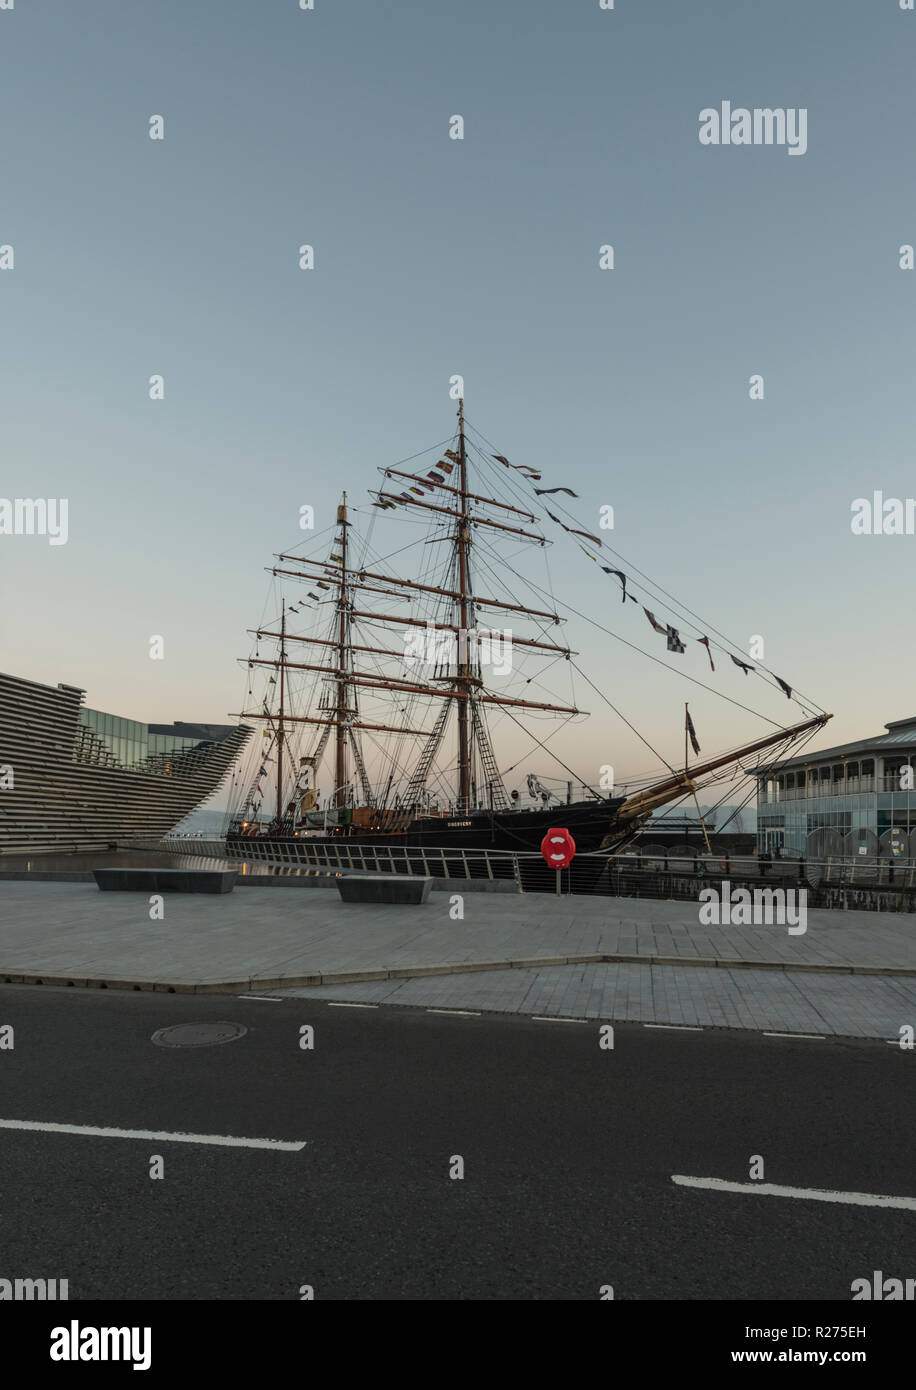 RRS Discovery, der letzte Holzschiff in Großbritannien gebaut wurde, ist neben dem V&A Design Museum als Teil der Waterfront regeneration in Dundee, UK angedockt Stockfoto